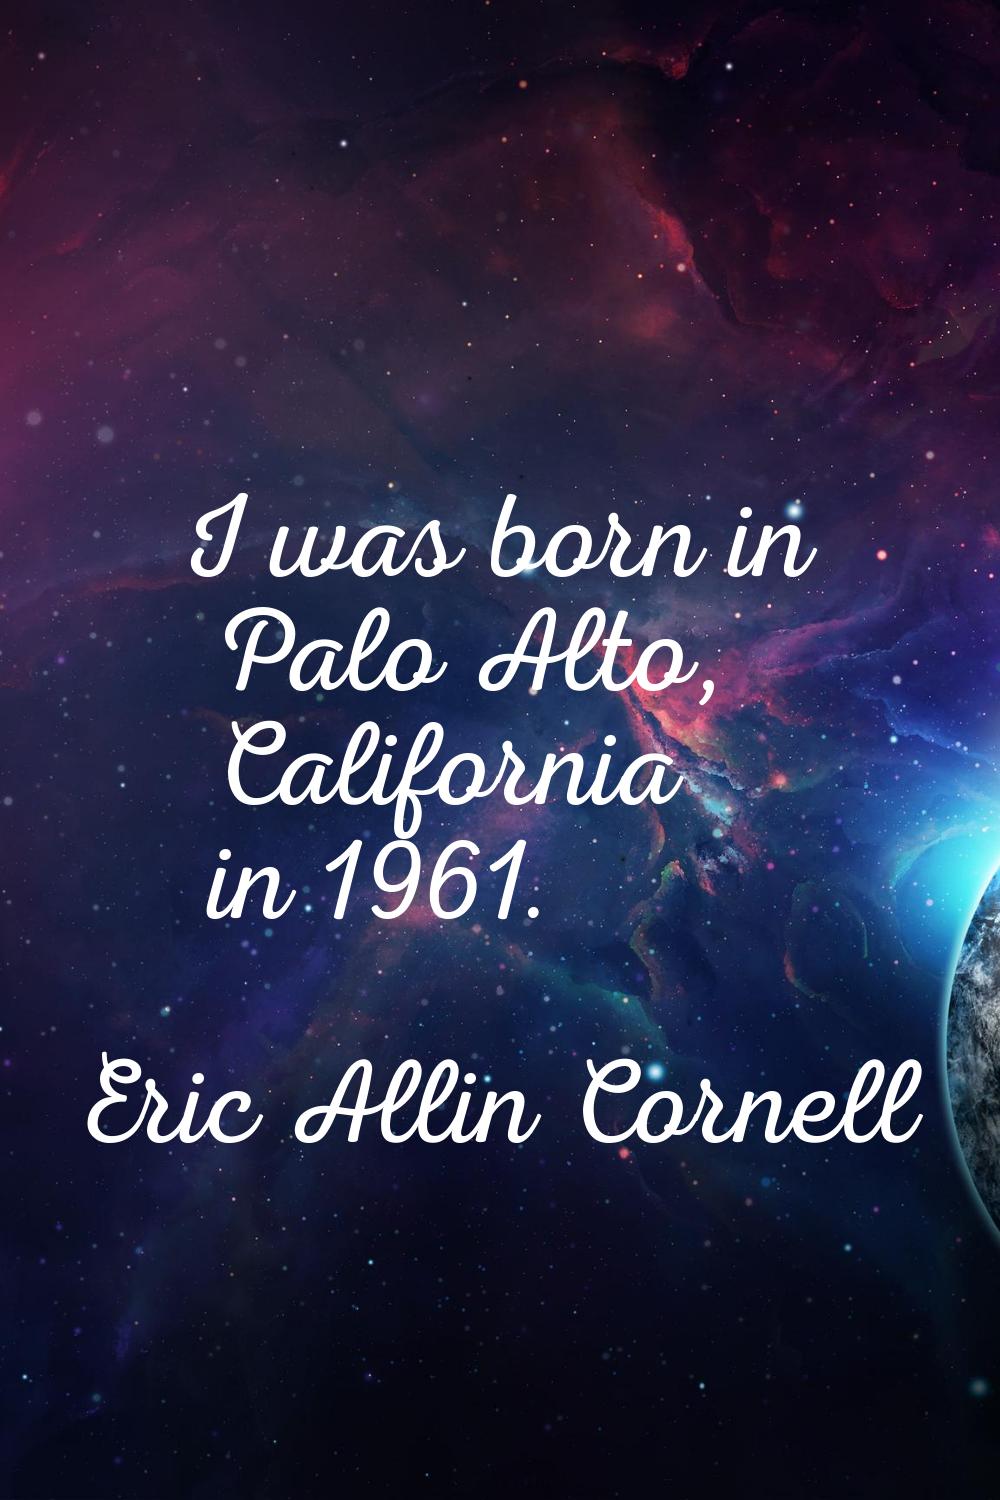 I was born in Palo Alto, California in 1961.